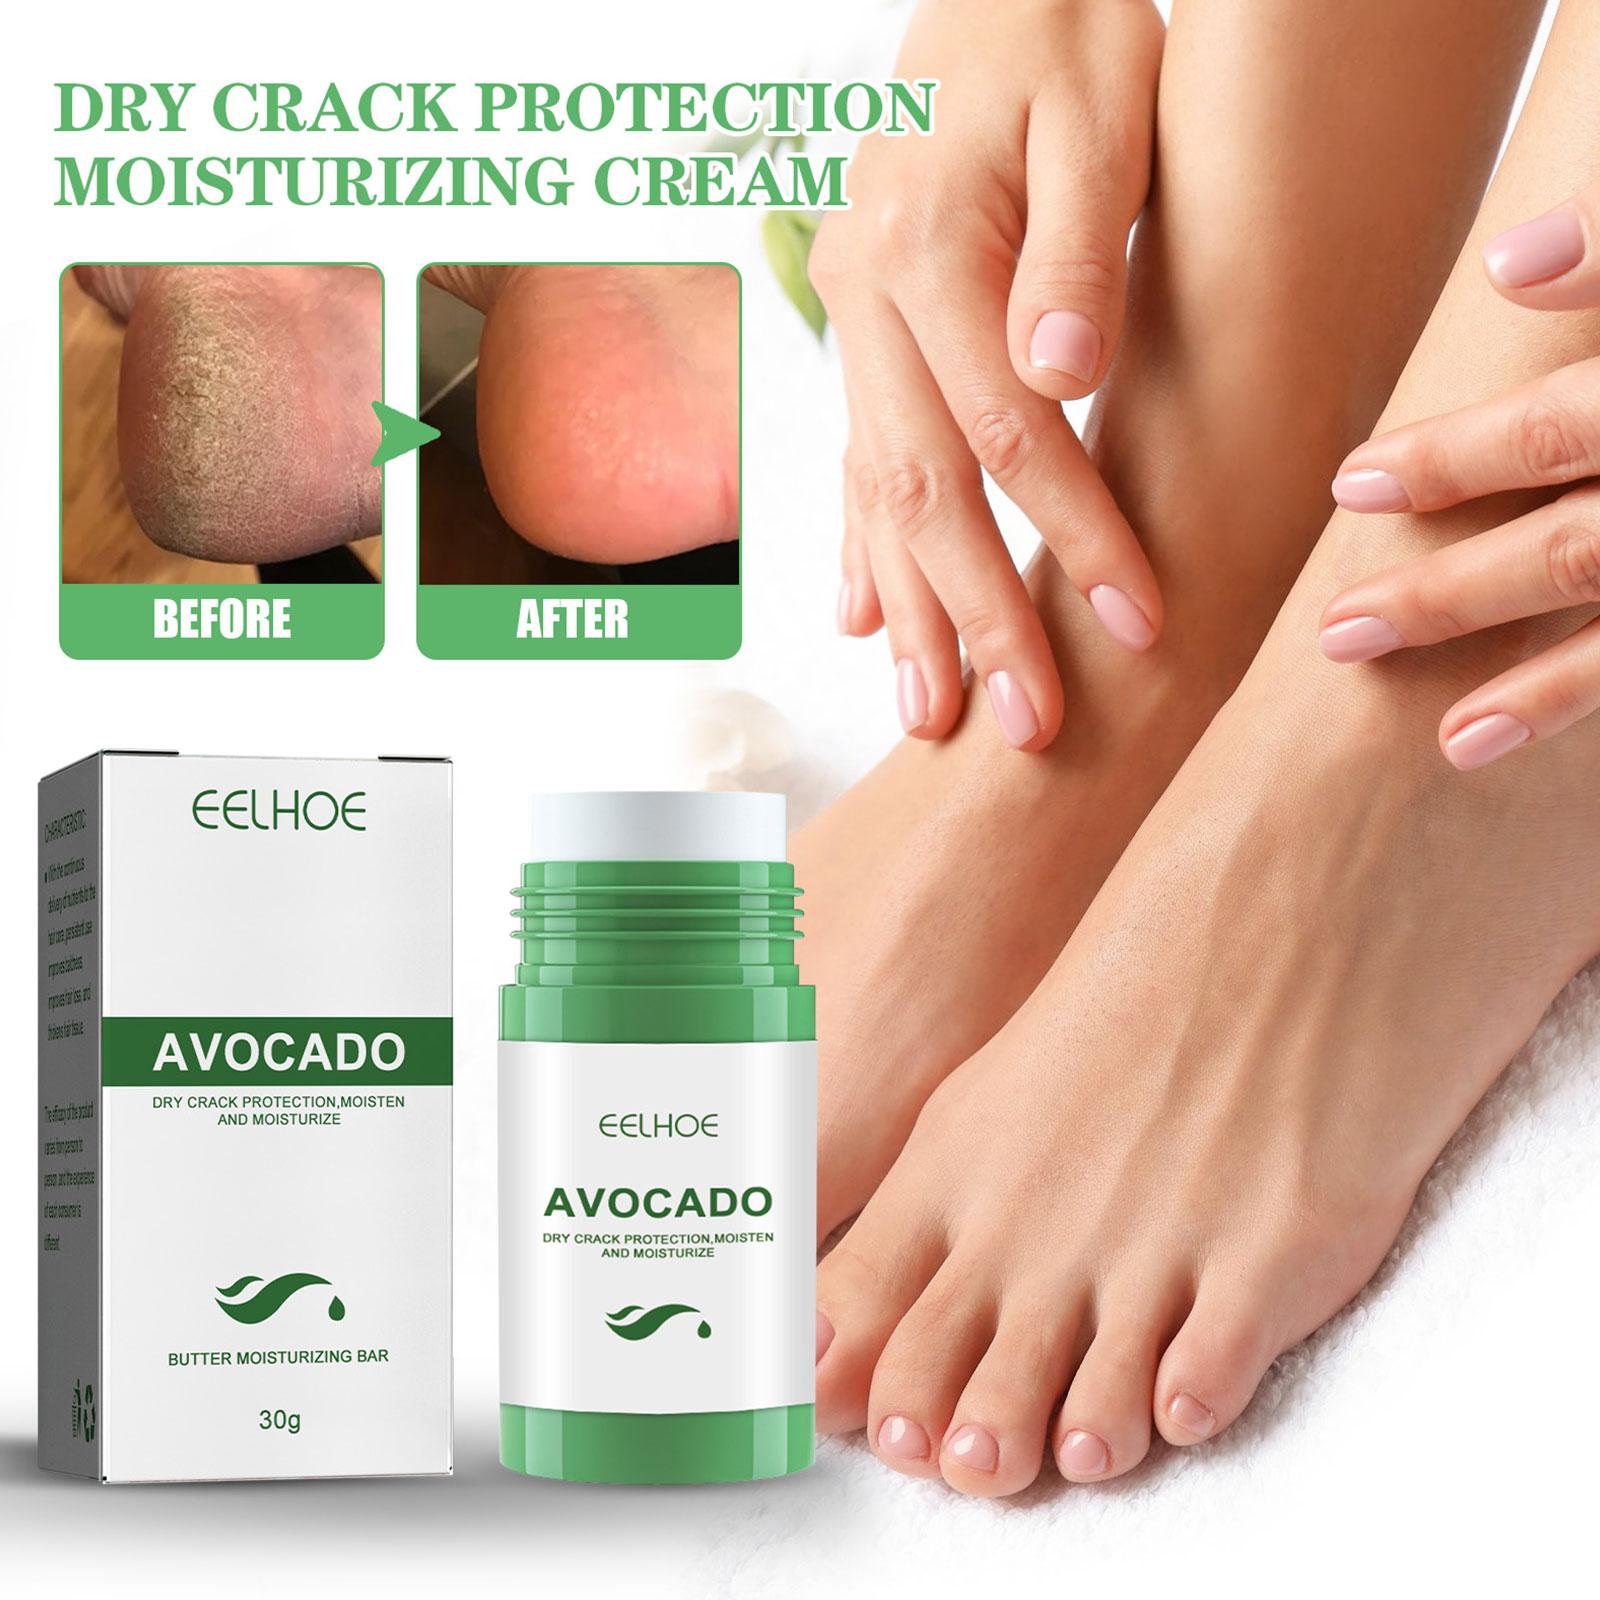 Crema naturale del piede olio di avocado che idrata il tallone antidry crack rimozione di riparazione rotta rimozione morta le mani